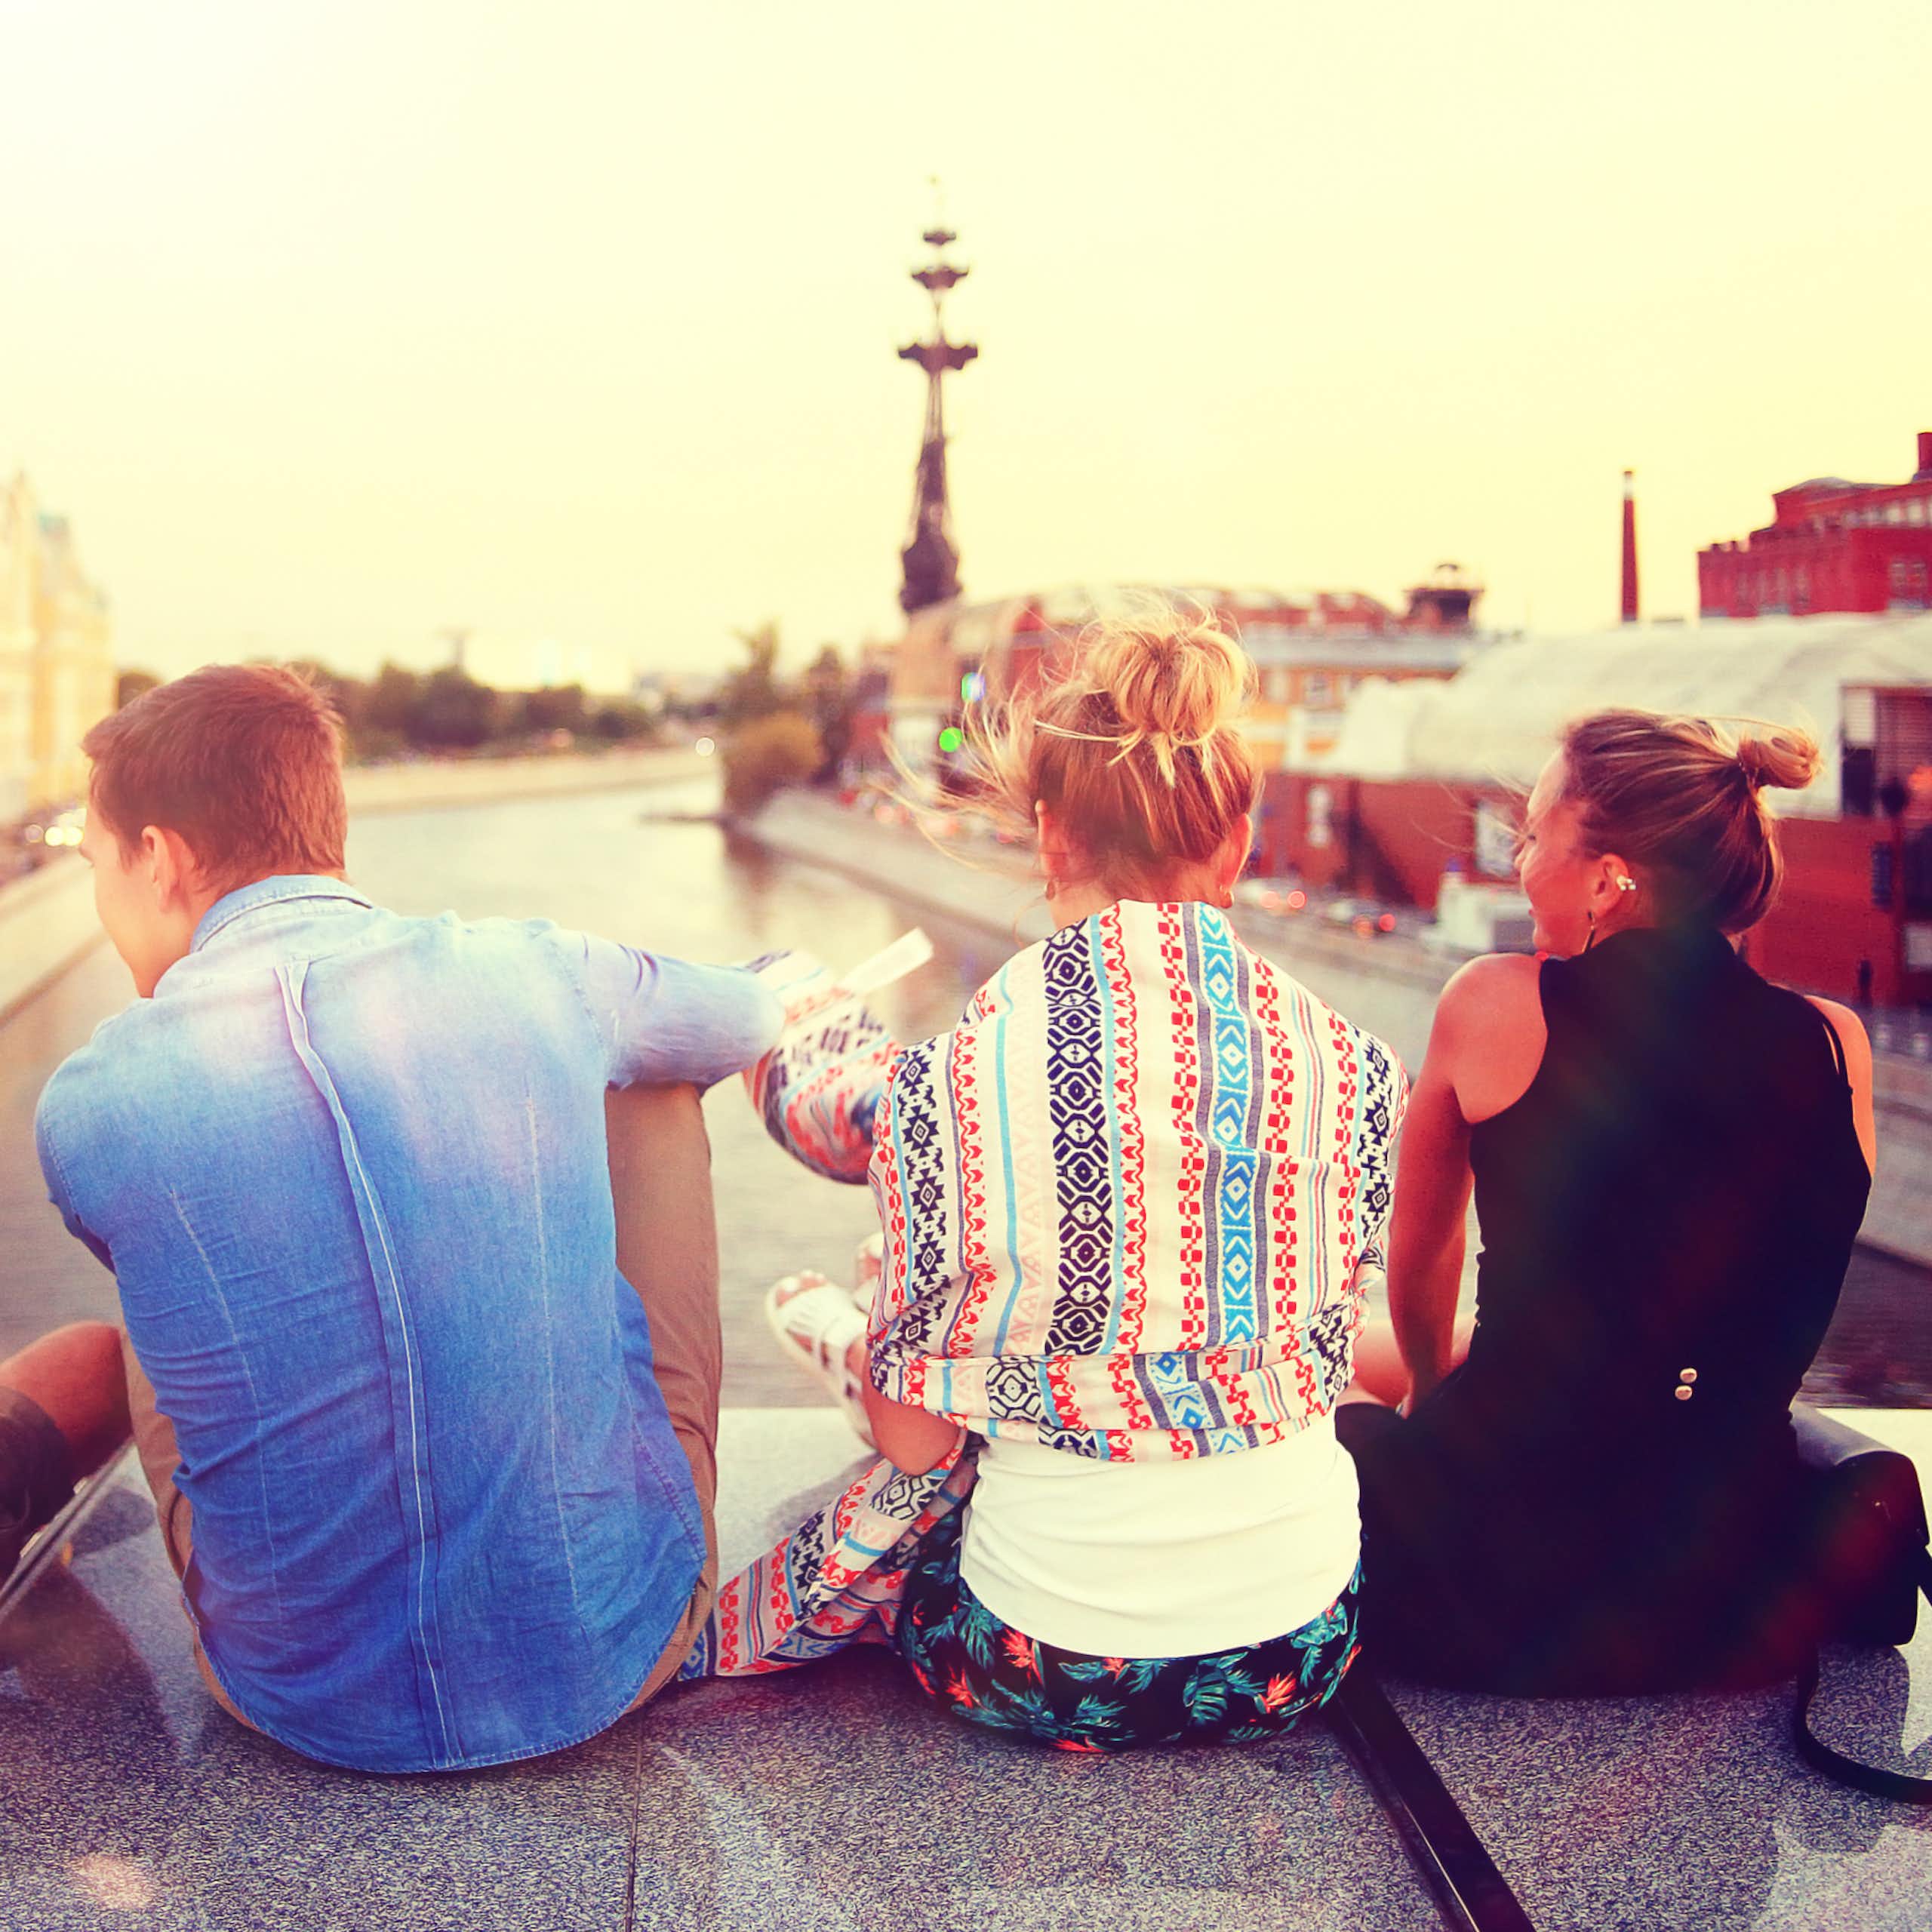 Young people sitting on bridge overlooking city